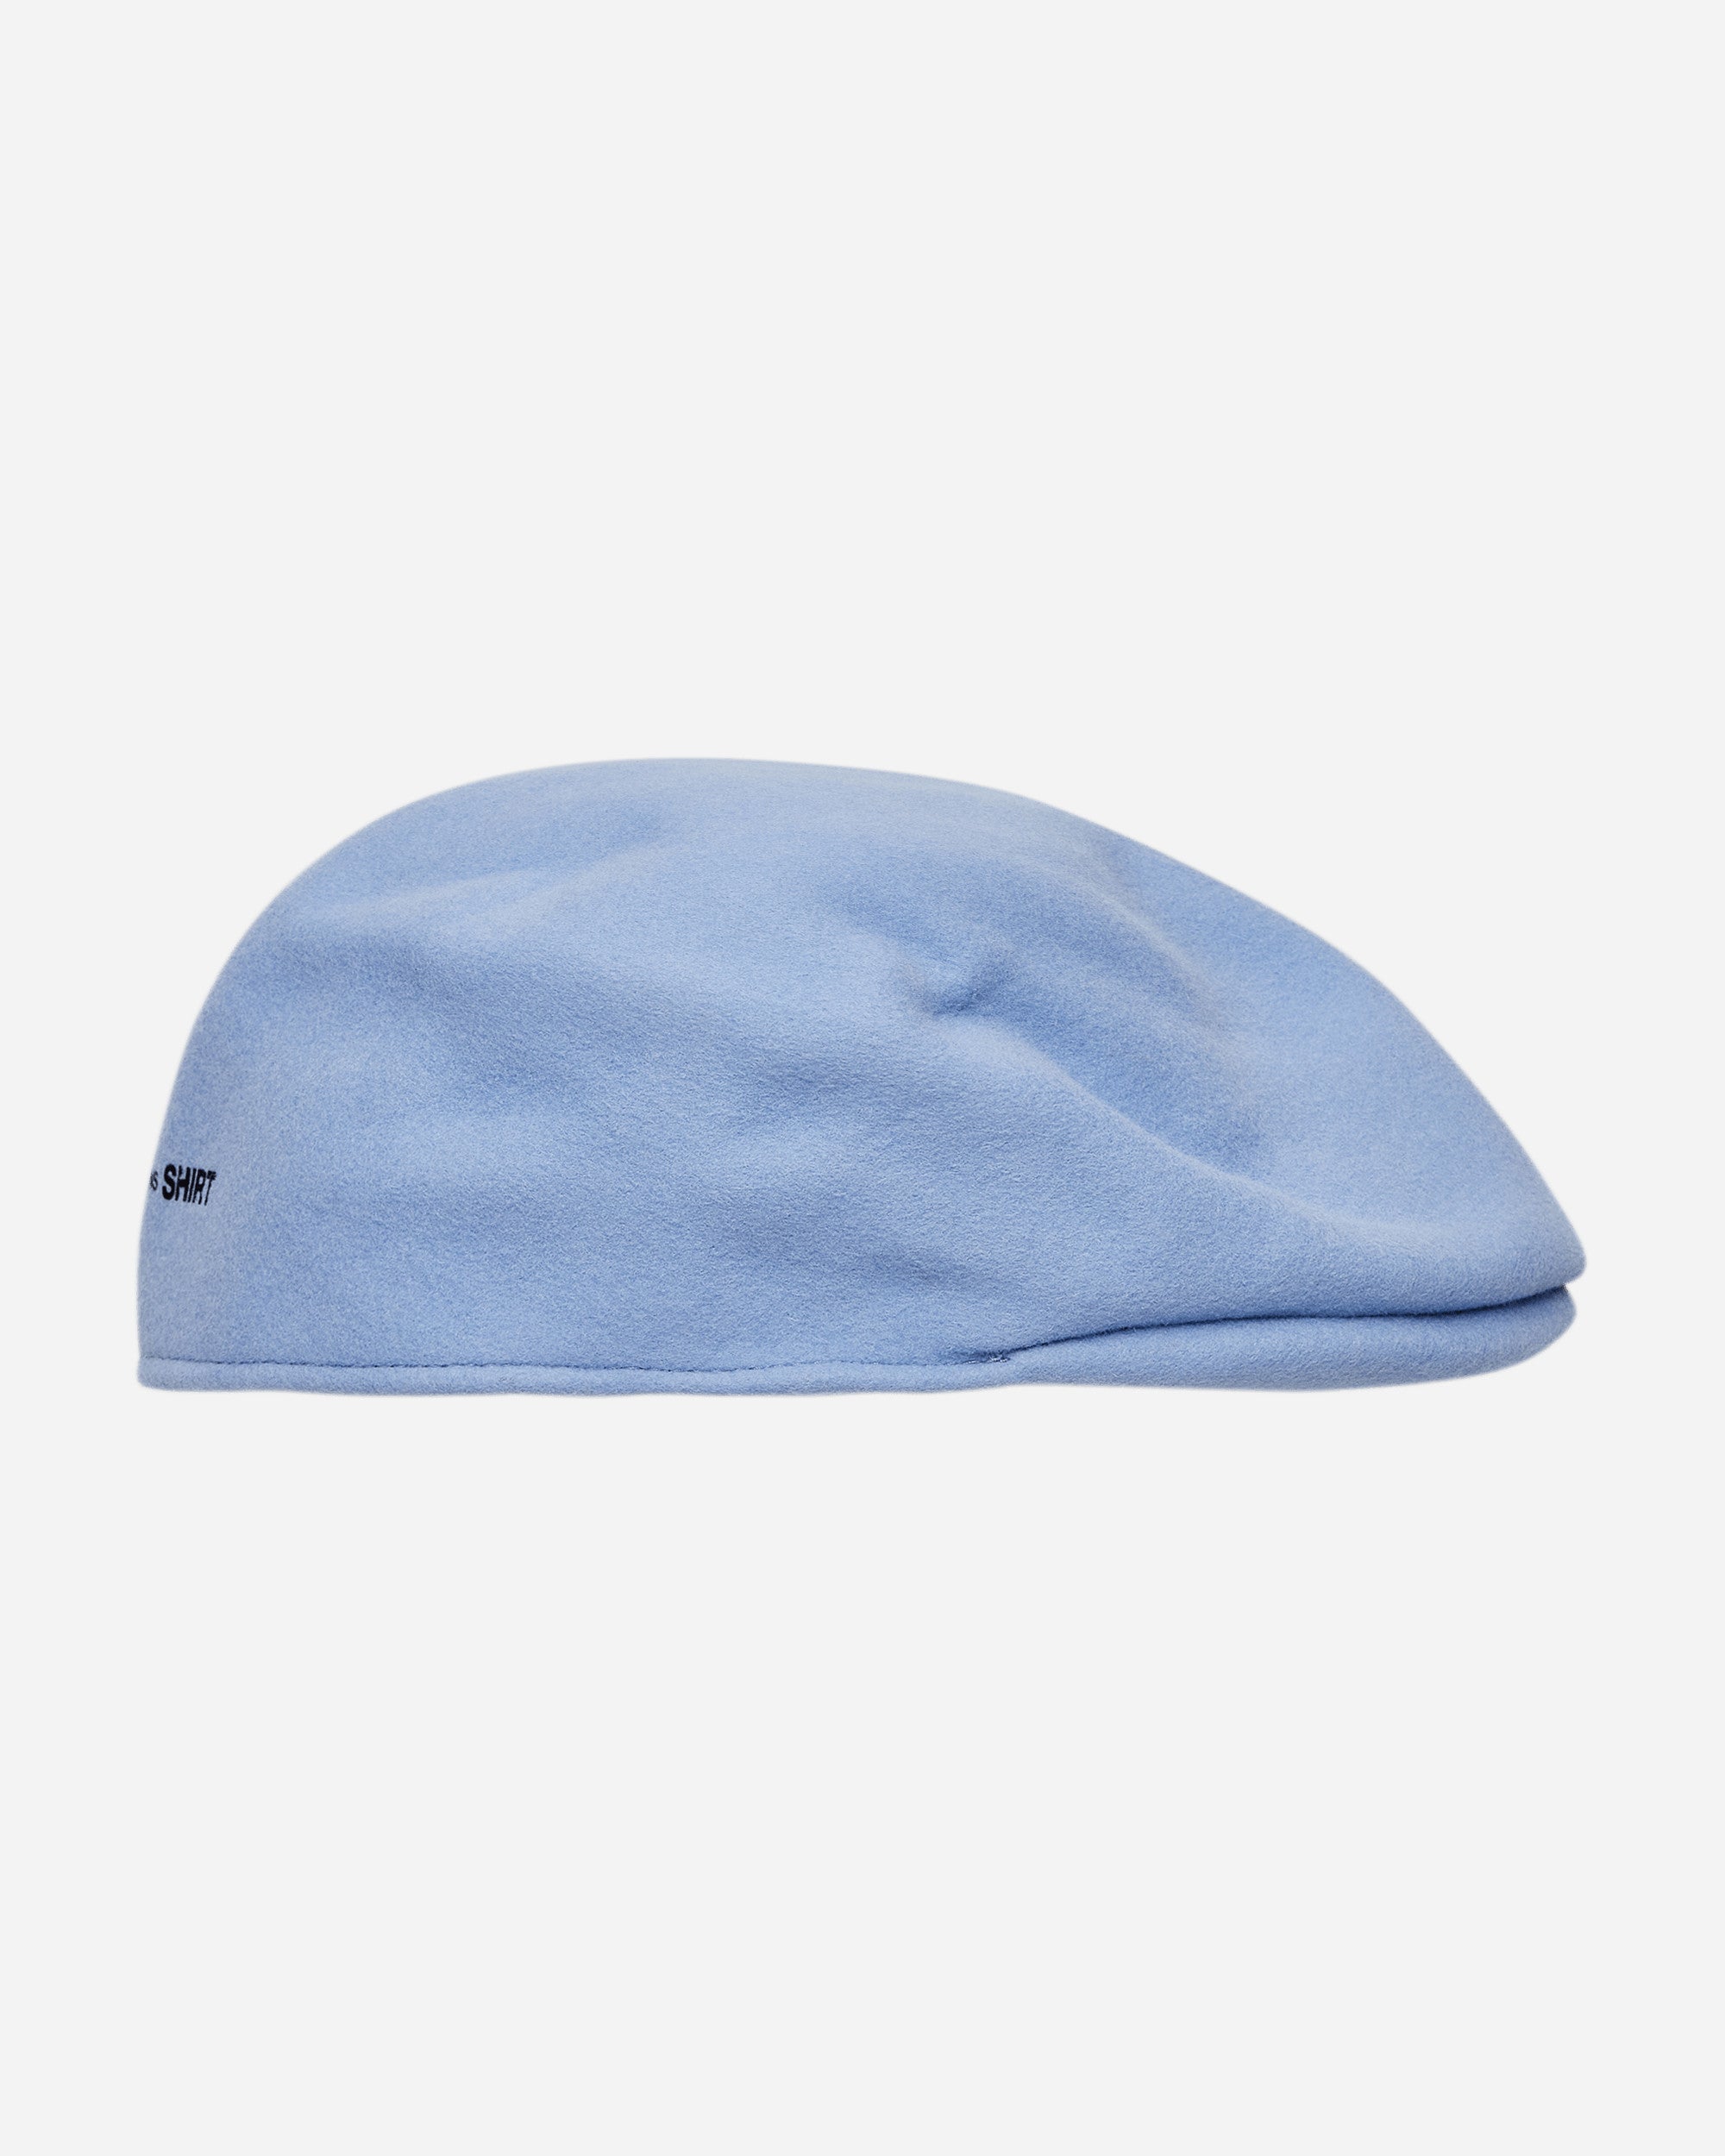 Comme Des Garçons Shirt Mens Hunting Cap Pale Blue Hats Caps FJ-K601-W22 5